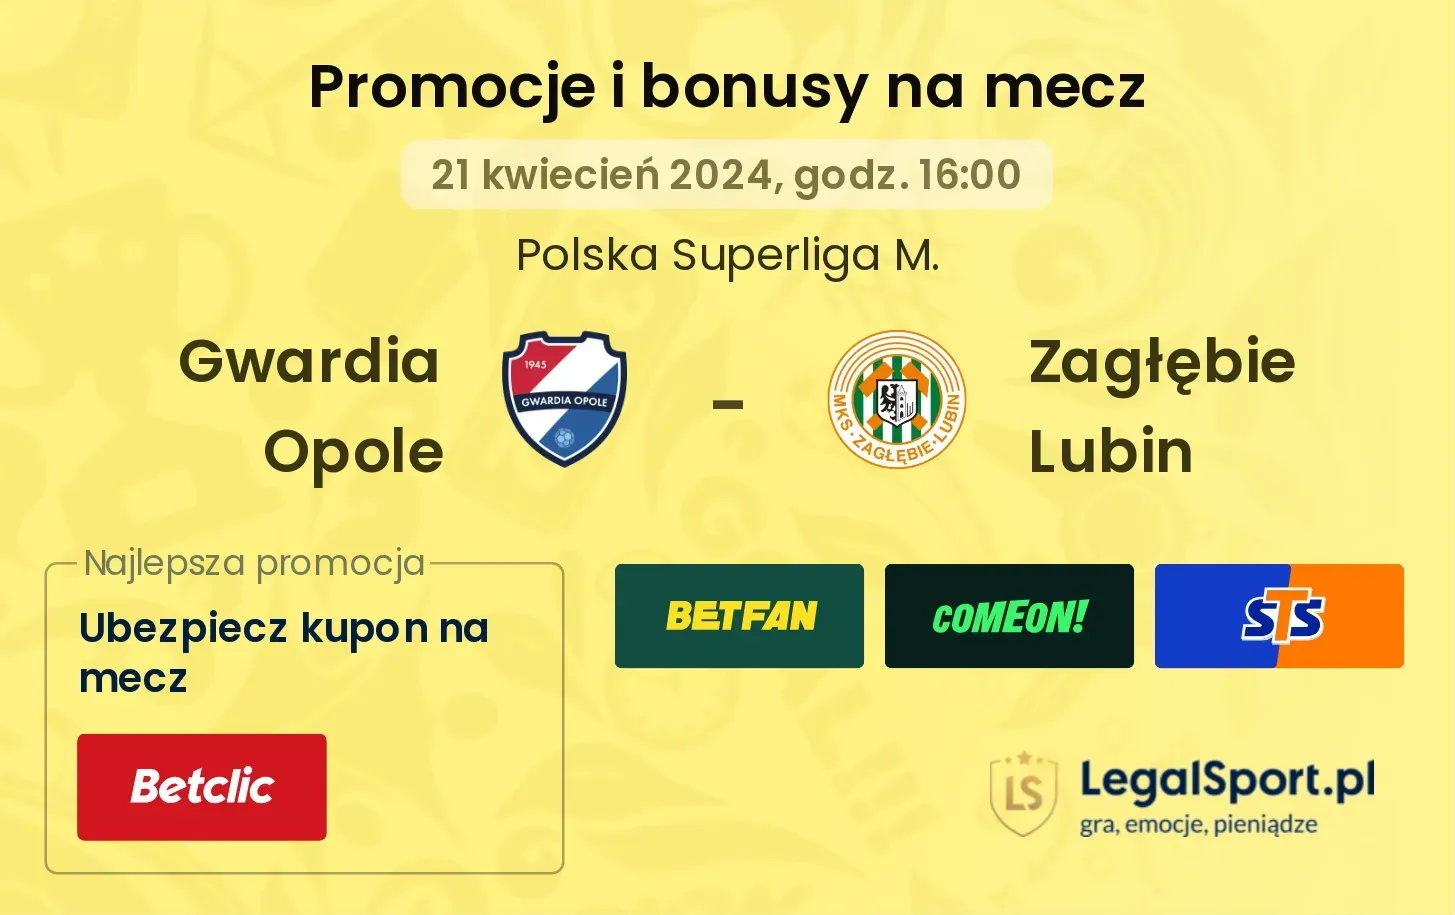 Gwardia Opole - Zagłębie Lubin promocje bonusy na mecz